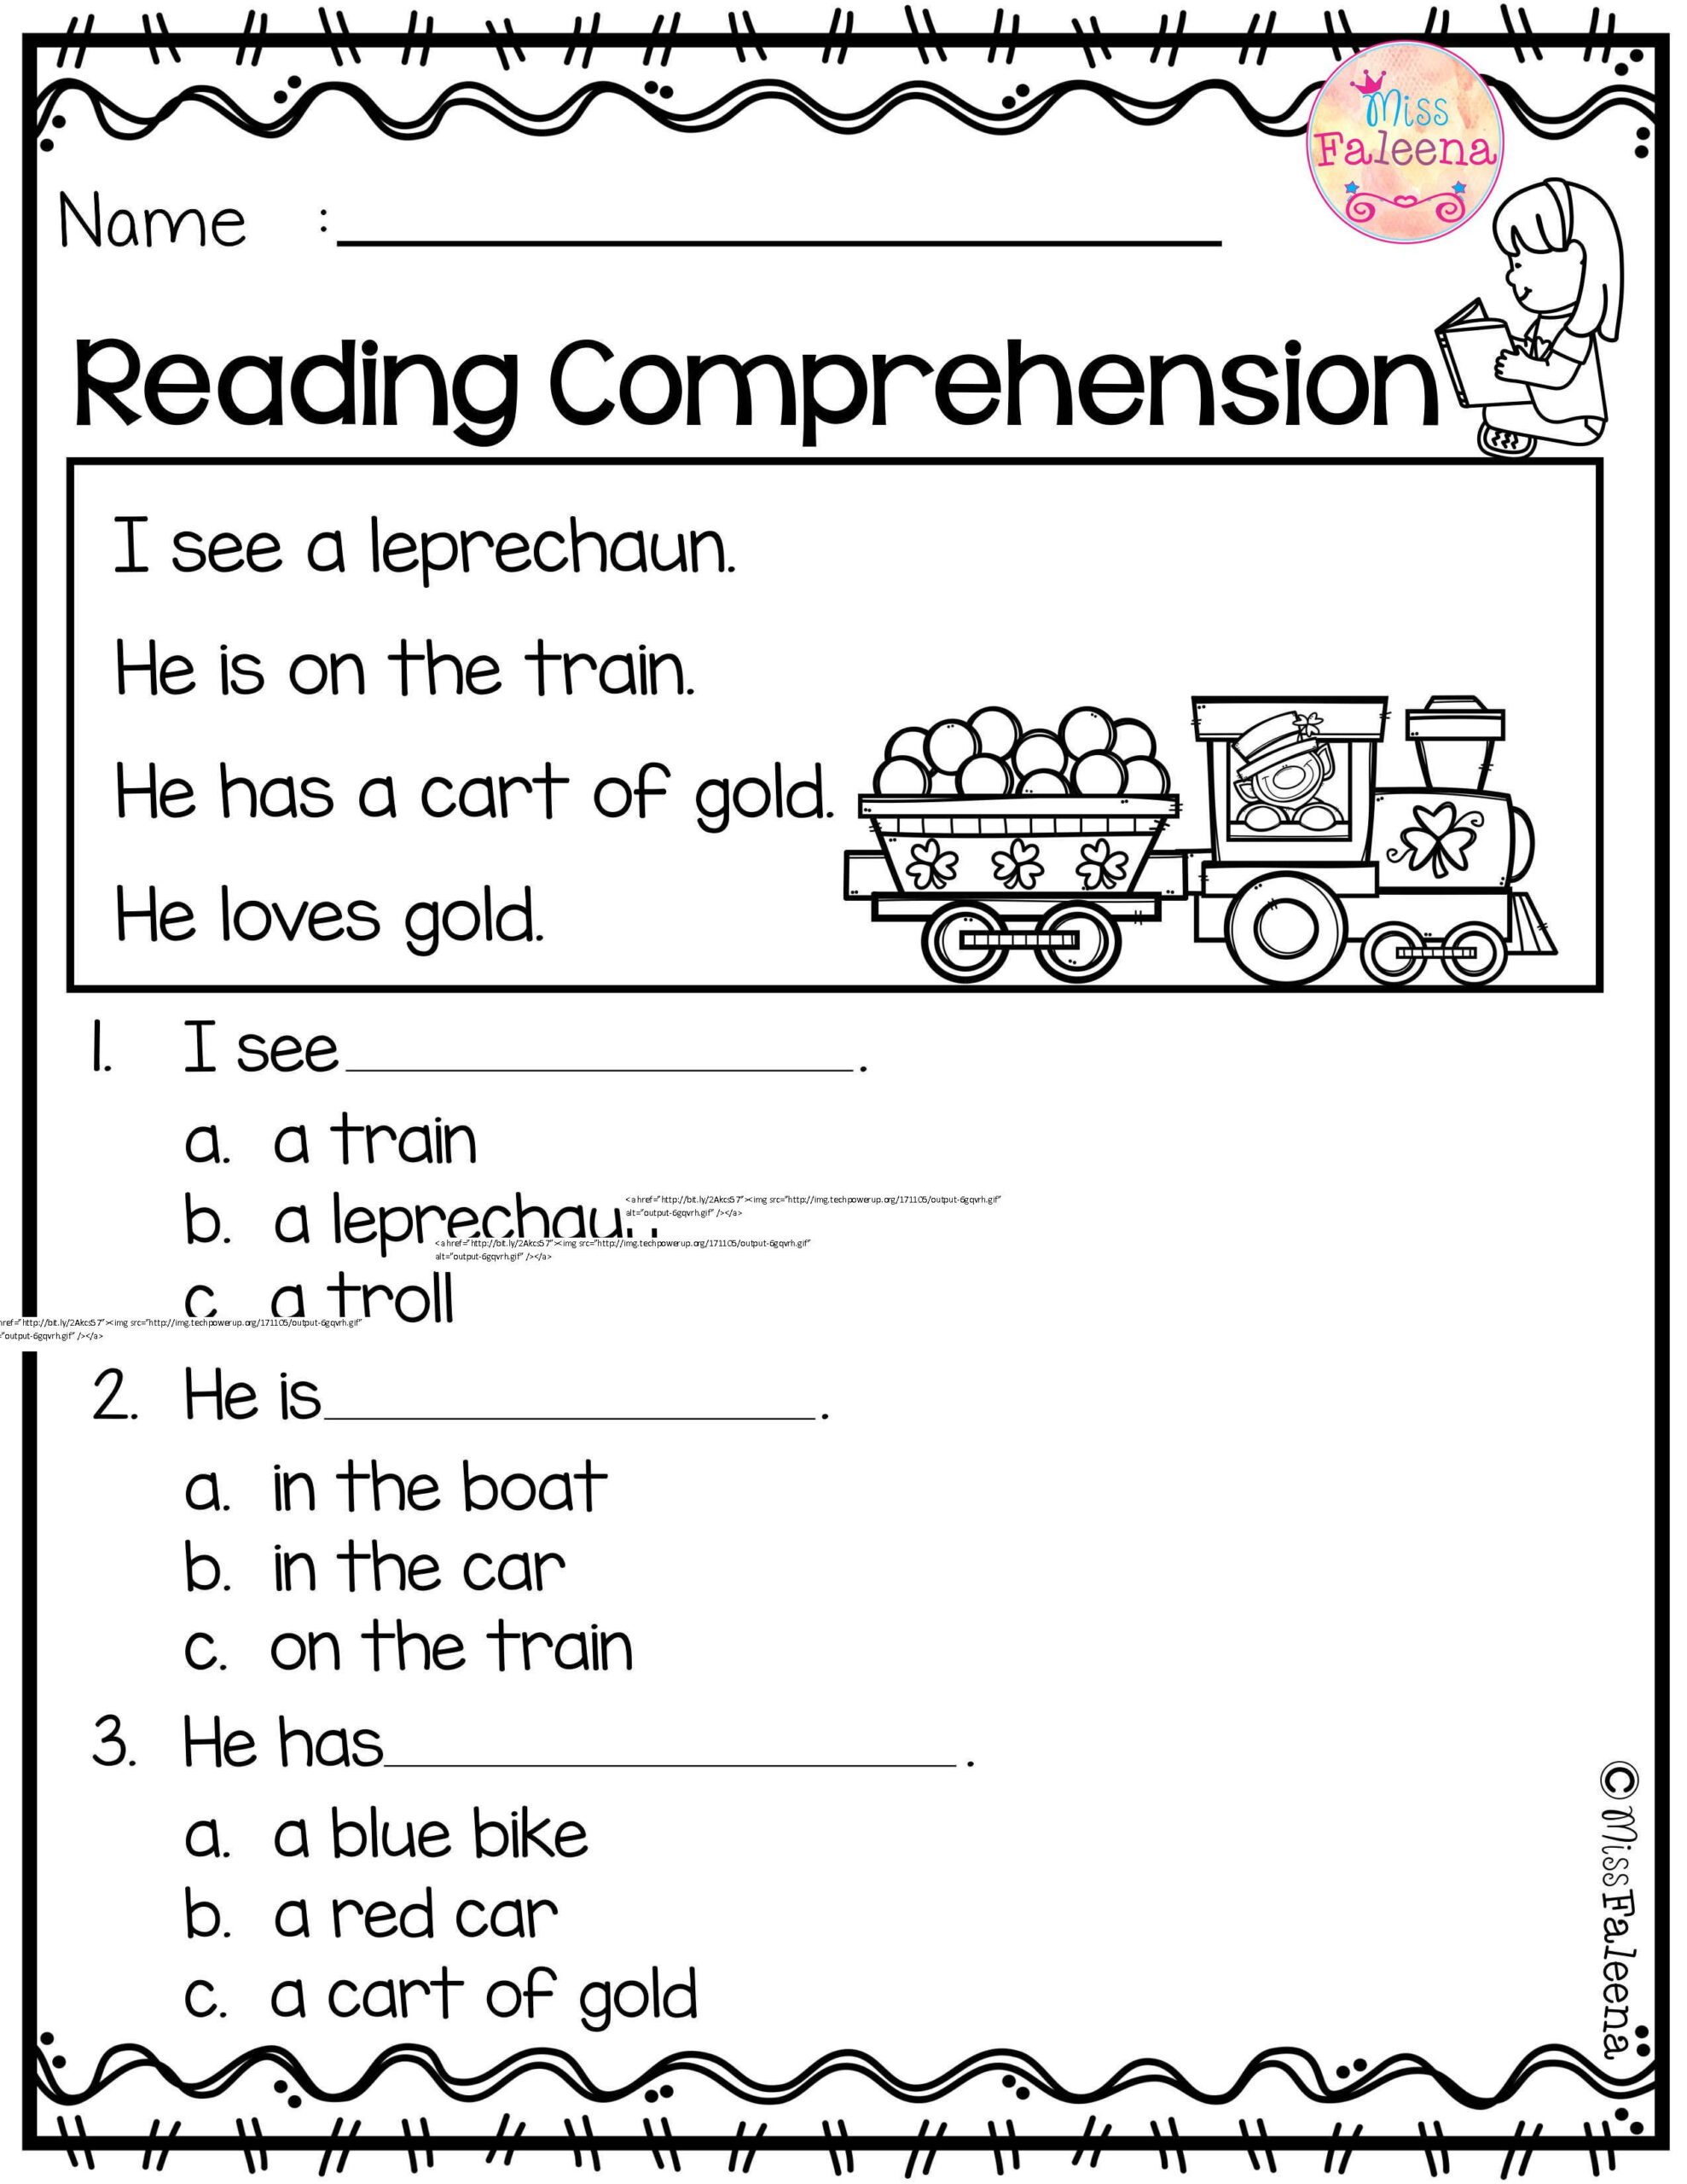 kindergarten-reading-worksheets-printable-reading-comprehension-worksheets